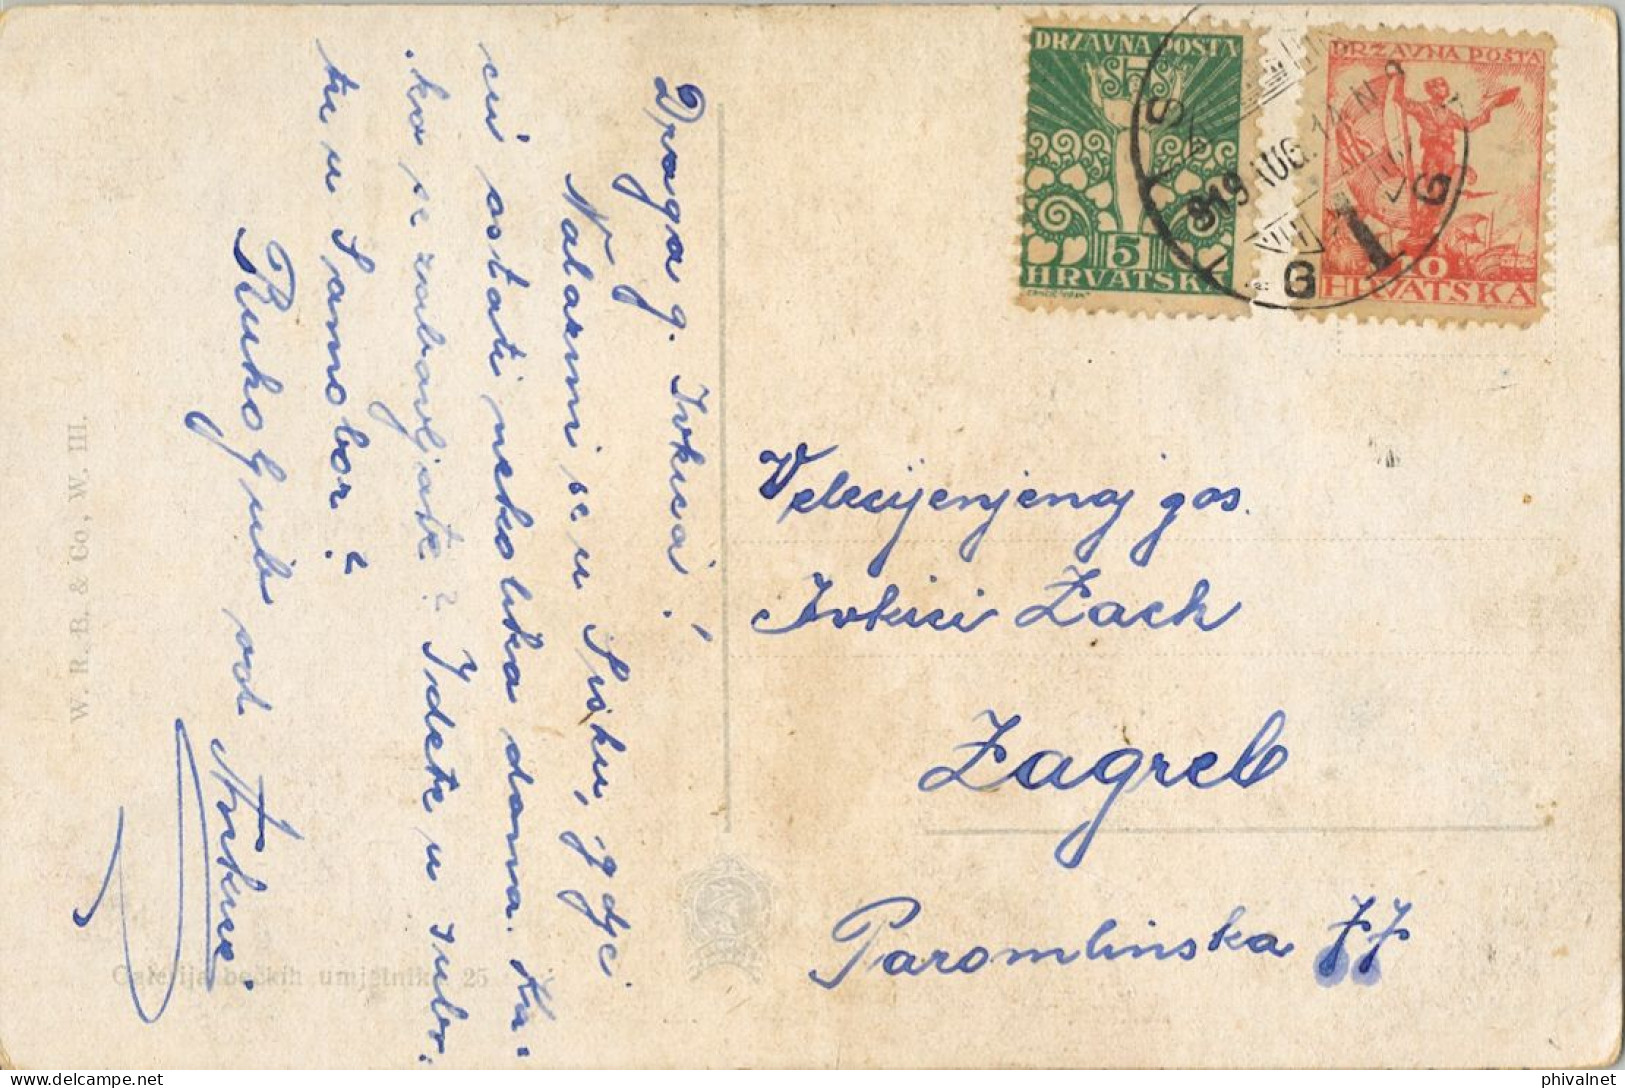 1919 YUGOSLAVIA , T.P. CIRCULADA  A ZAGREB , YV. 55 , 56 , SERIE ESPECIAL , CROACIA , DALMACIA - Brieven En Documenten